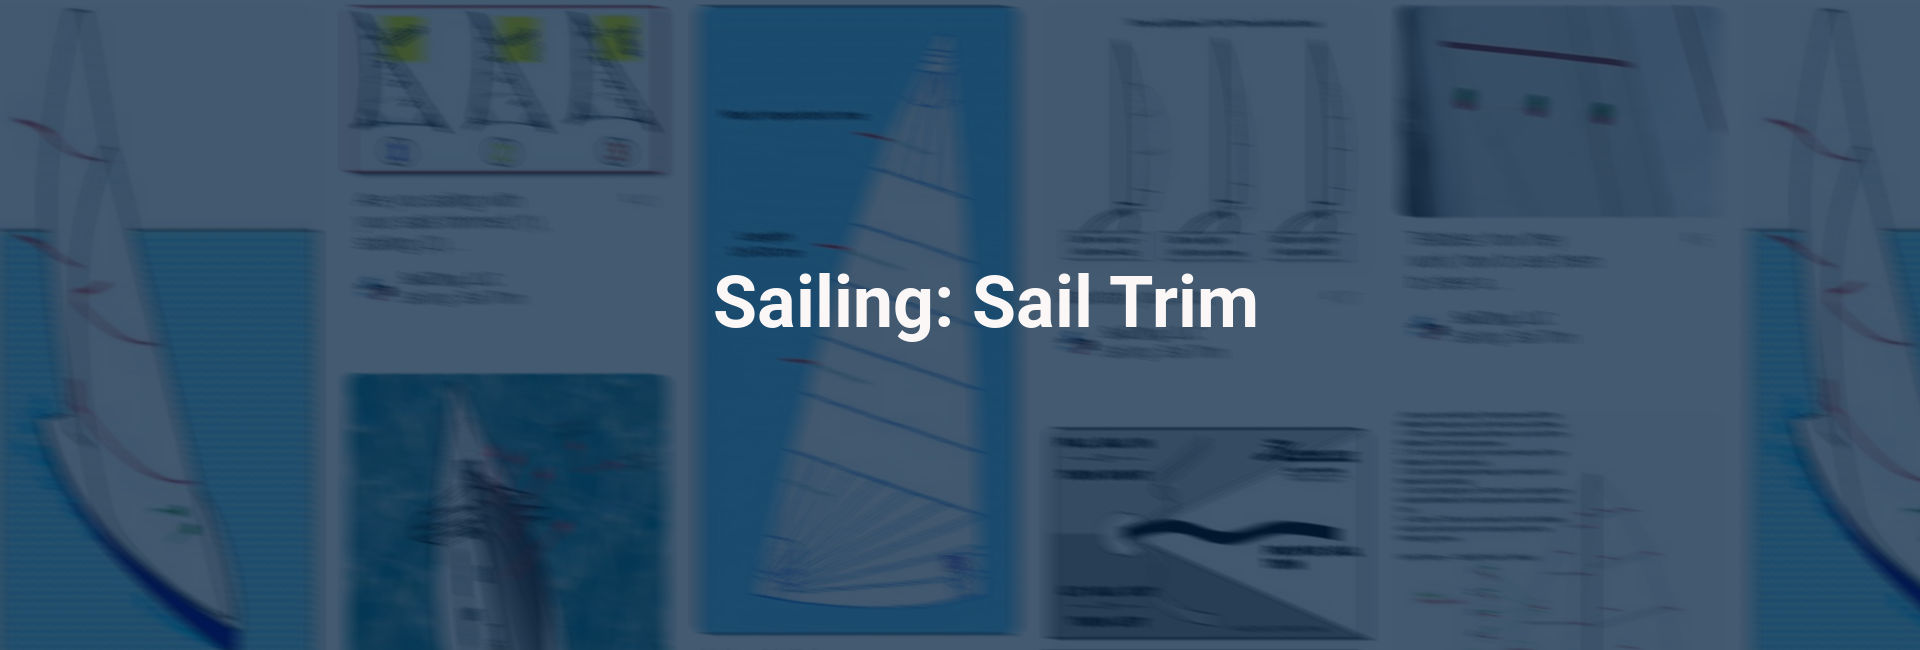 sailing sail trim